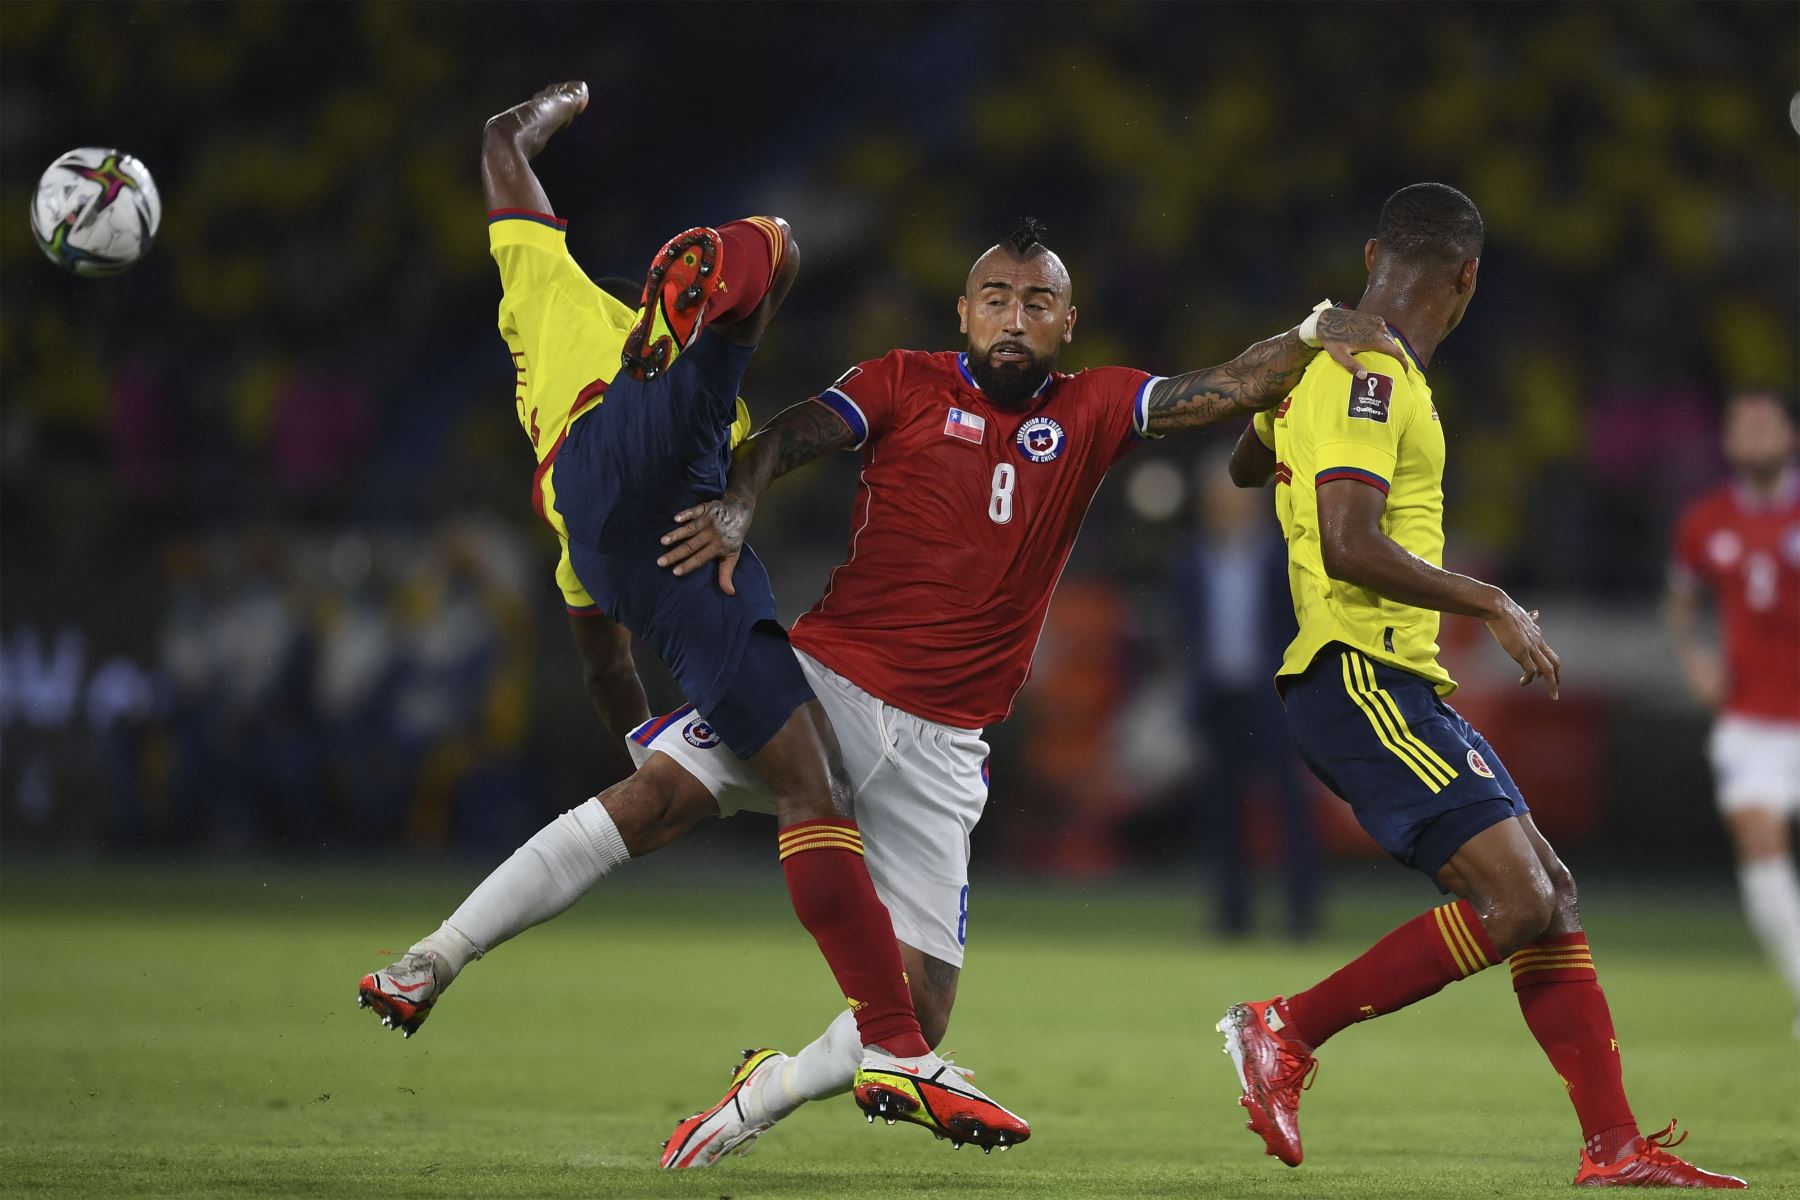 El chileno Arturo Vidal compite por el balón con el colombiano Oscar Murillo y el colombiano Yairo Moreno durante su partido clasificatorio sudamericano para la Copa Mundial de la FIFA Qatar 2022.
Foto: AFP